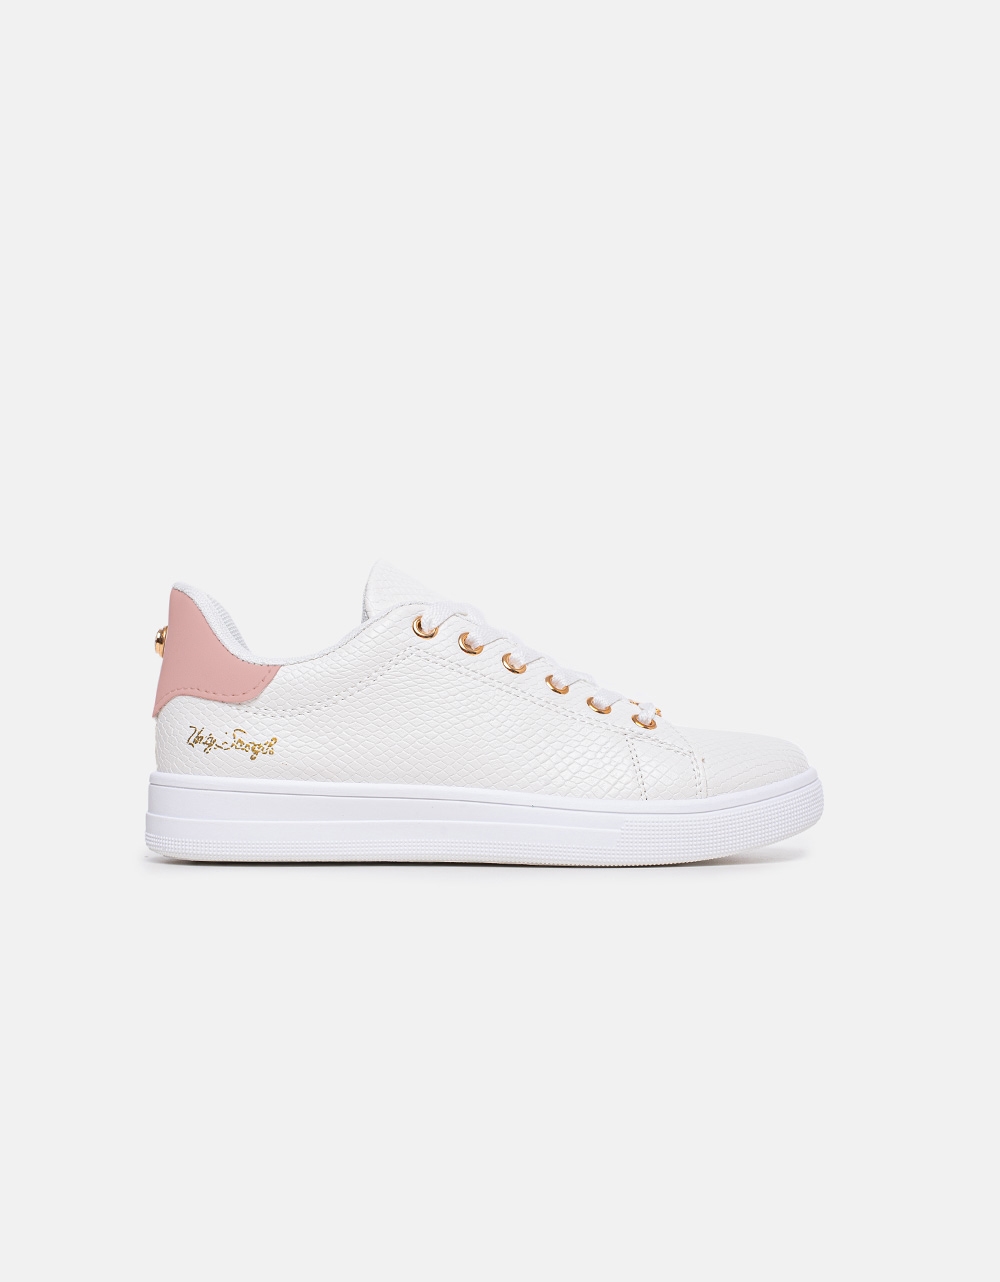 Εικόνα από Γυναικεία basic sneakers με μεταλλικές λεπτομέρειες Λευκό/Ροζ